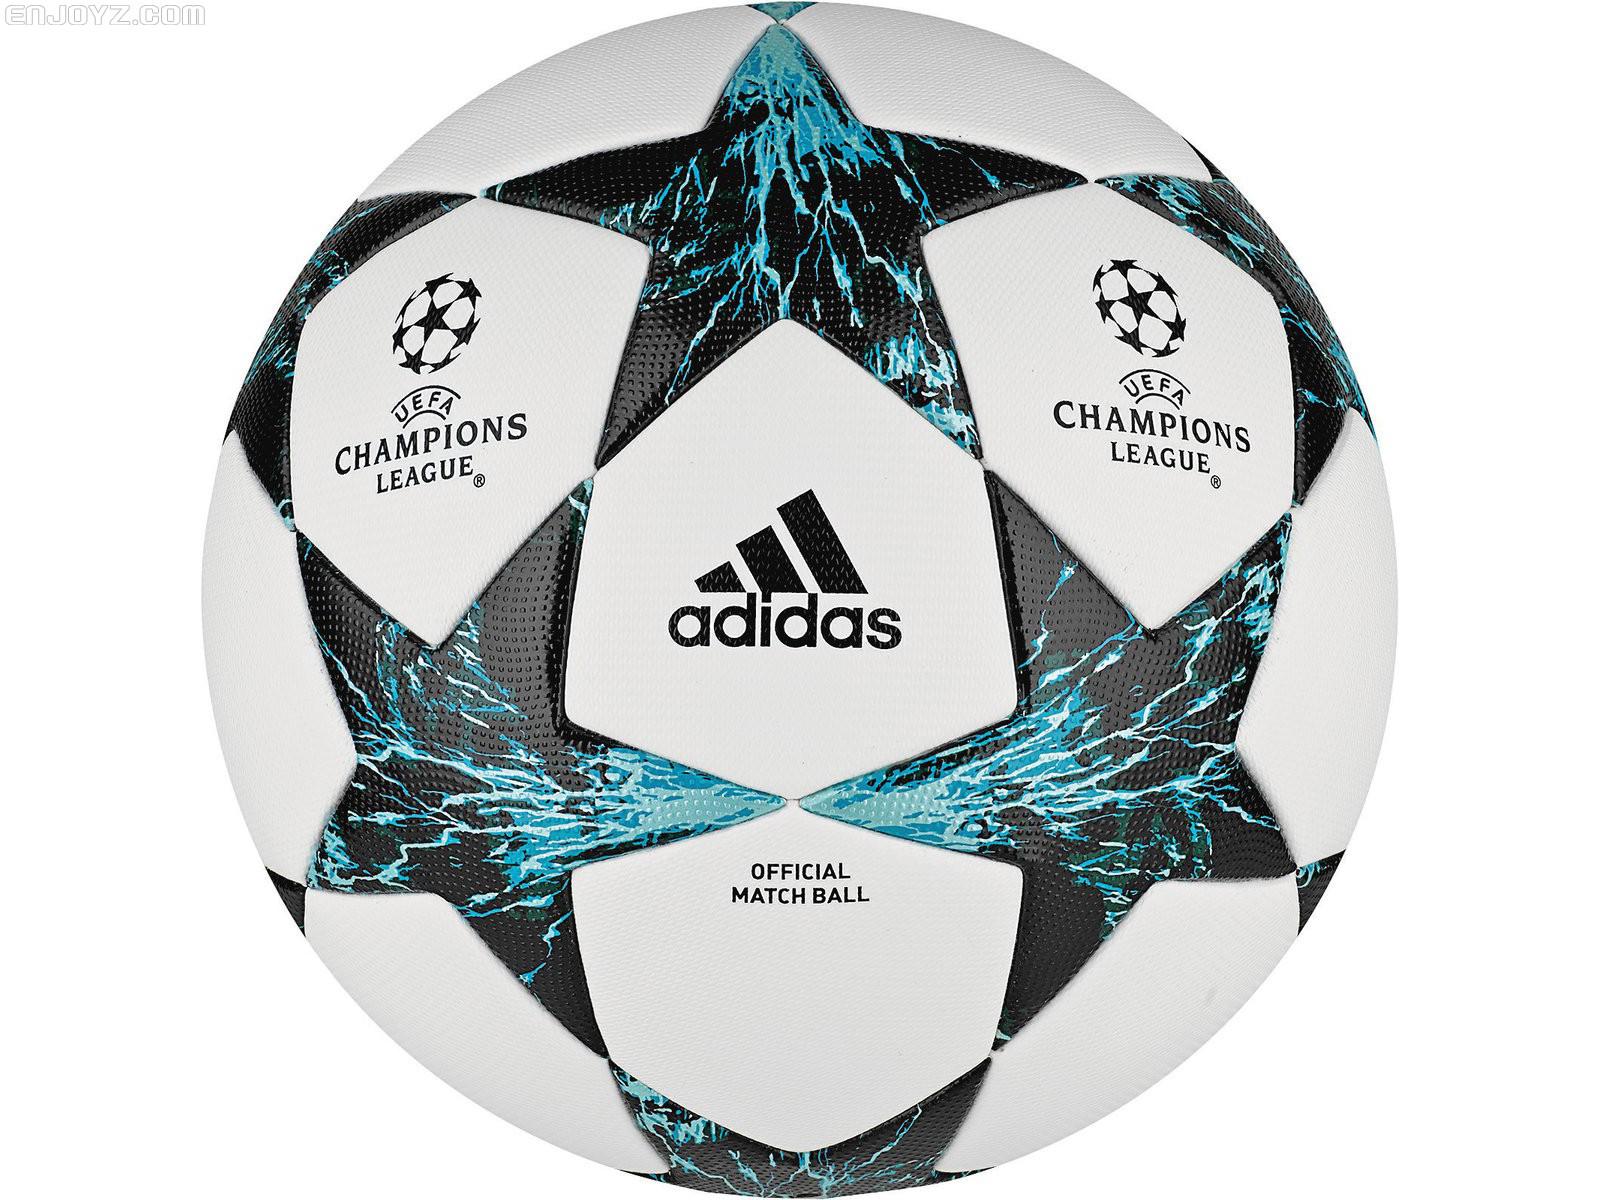 2018 欧冠 设置比赛用球 2017/18赛季欧冠联赛比赛用球遭曝光